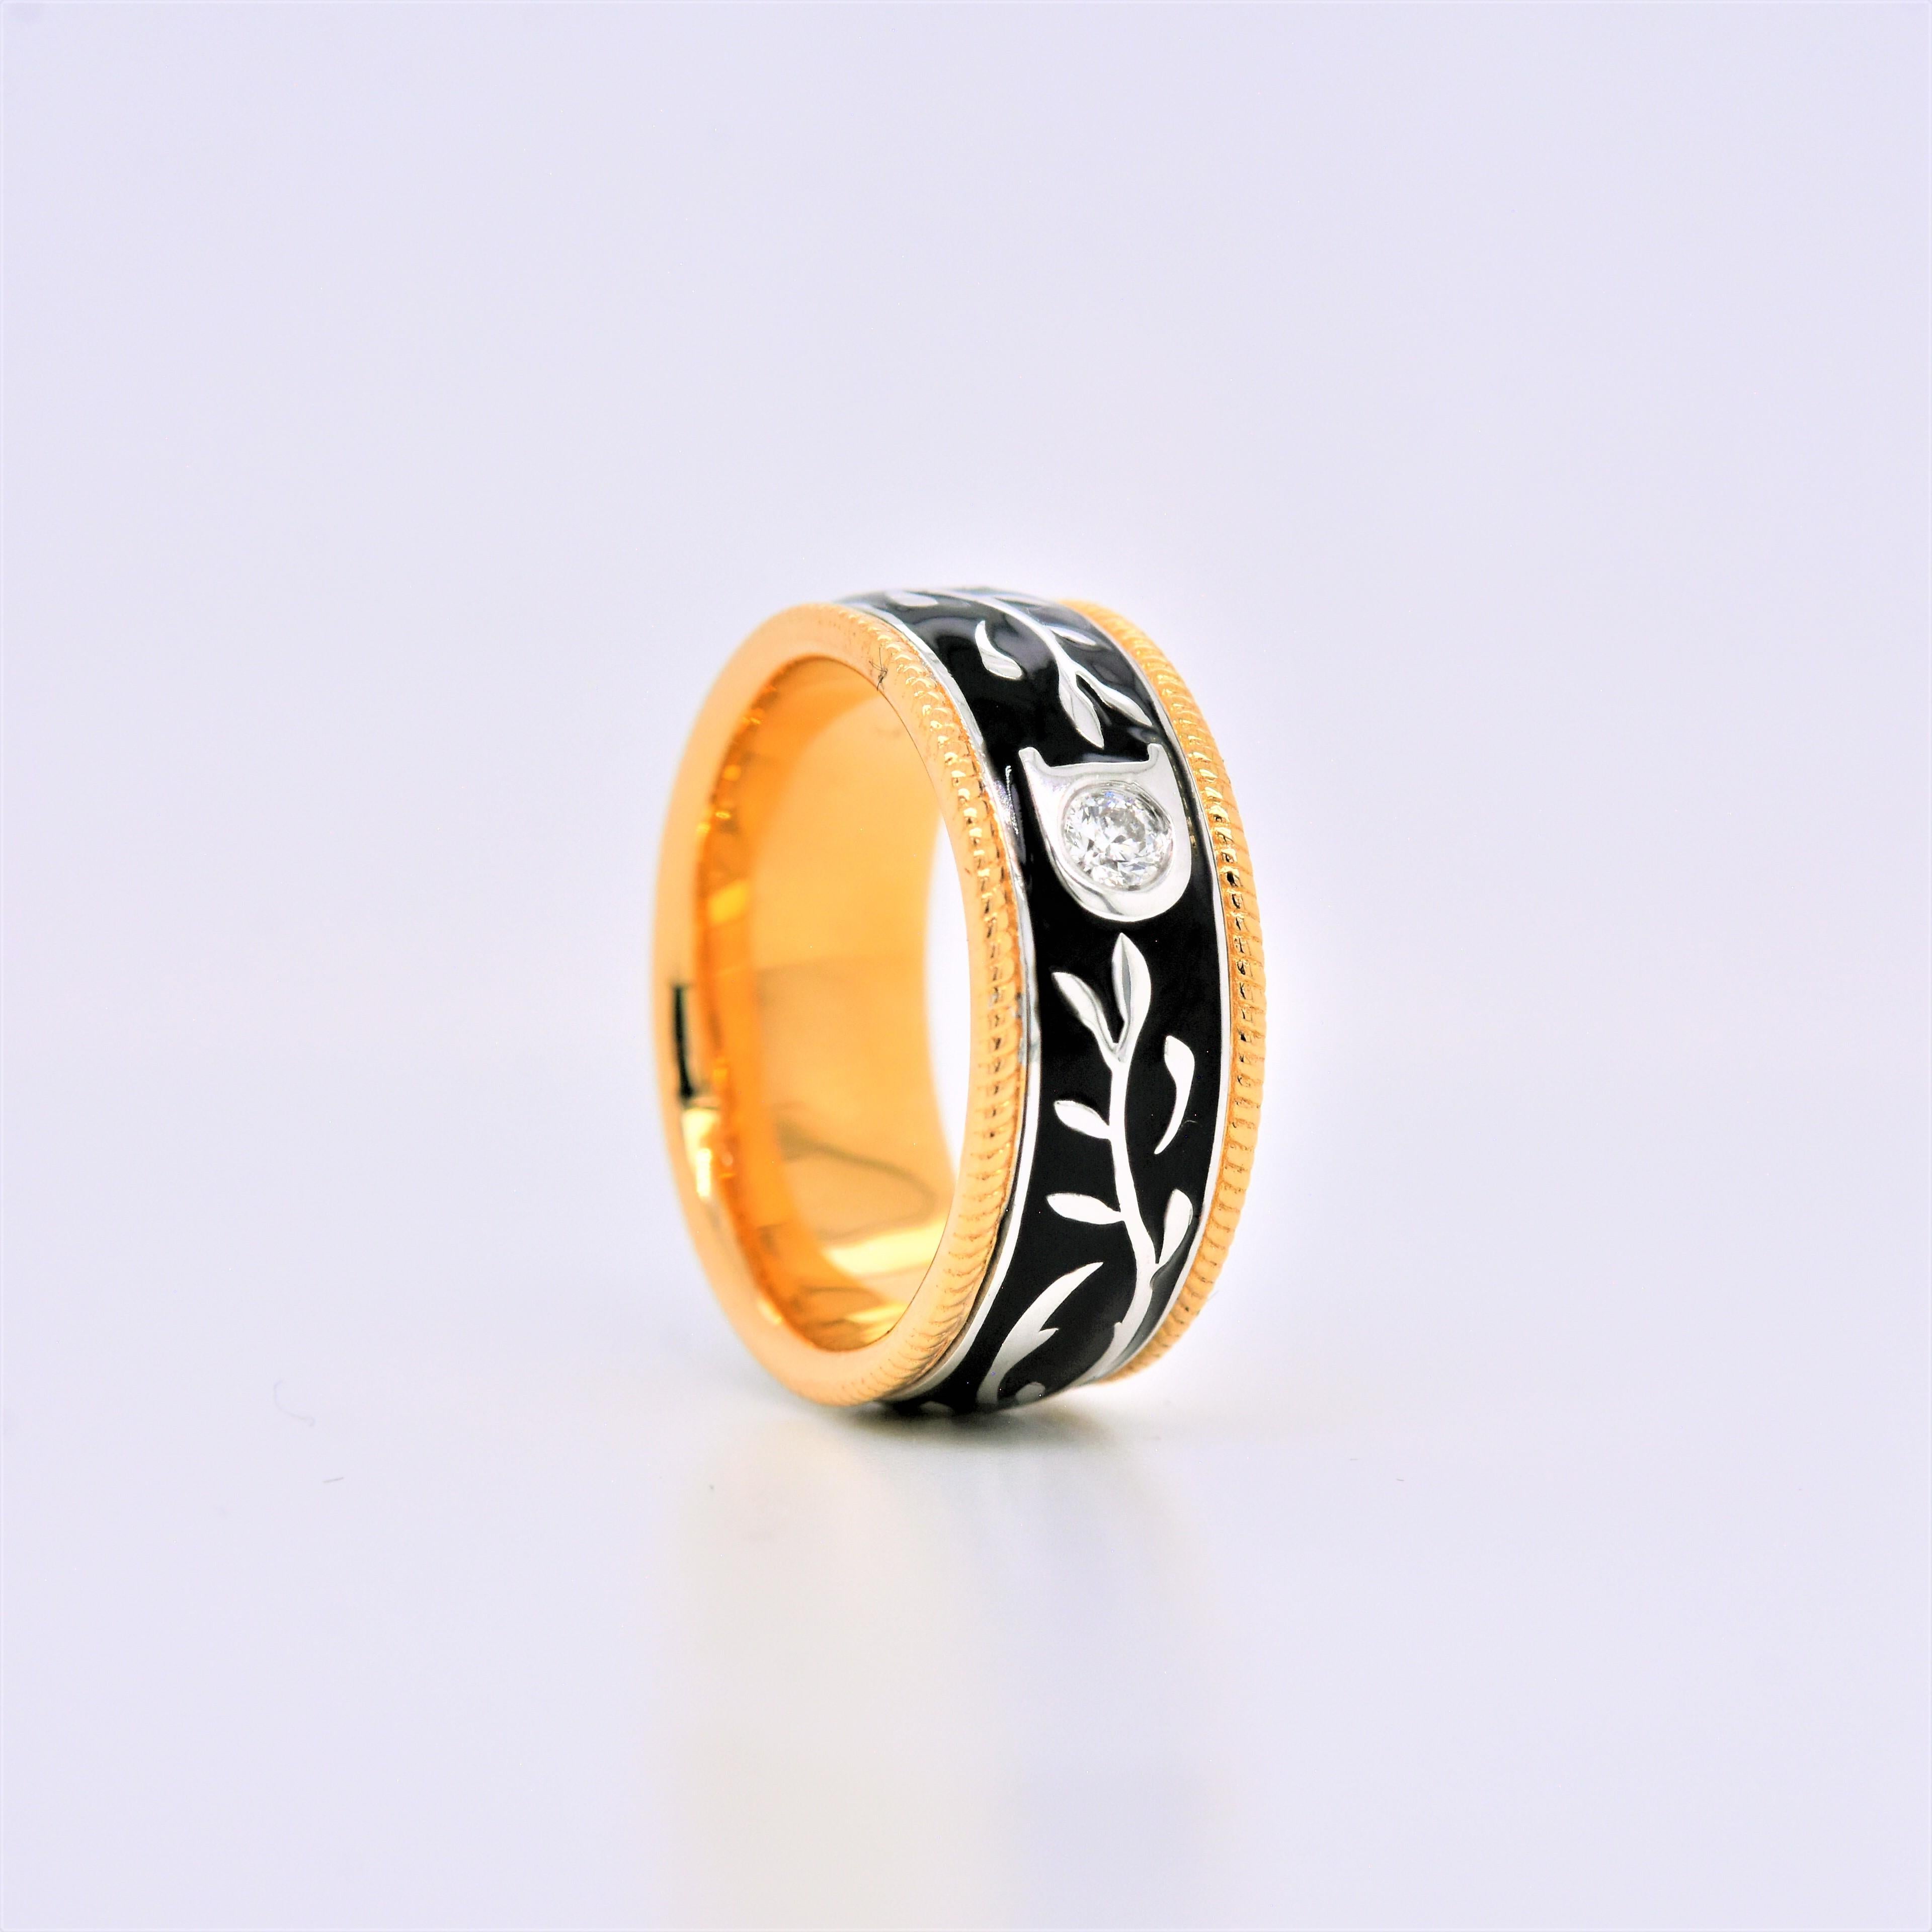 Contemporary 0.08 Carat White Diamond Enamel Floral Motif Ring Set in 18 Karat Yellow Gold